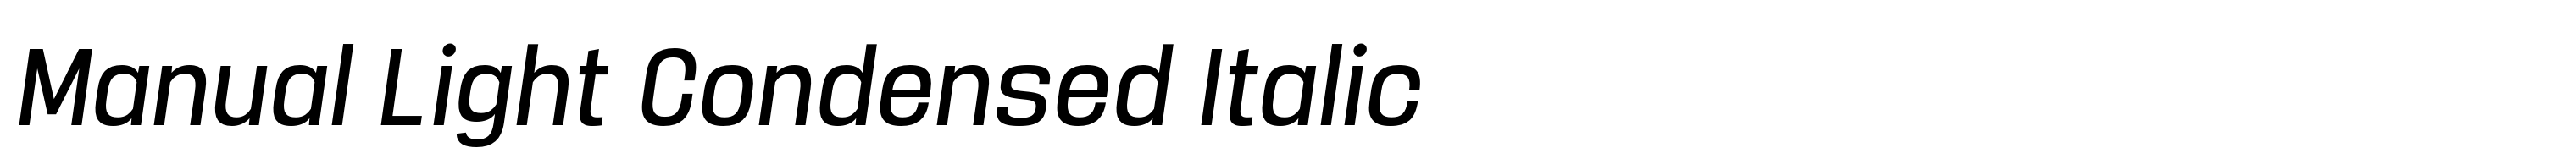 Manual Light Condensed Italic